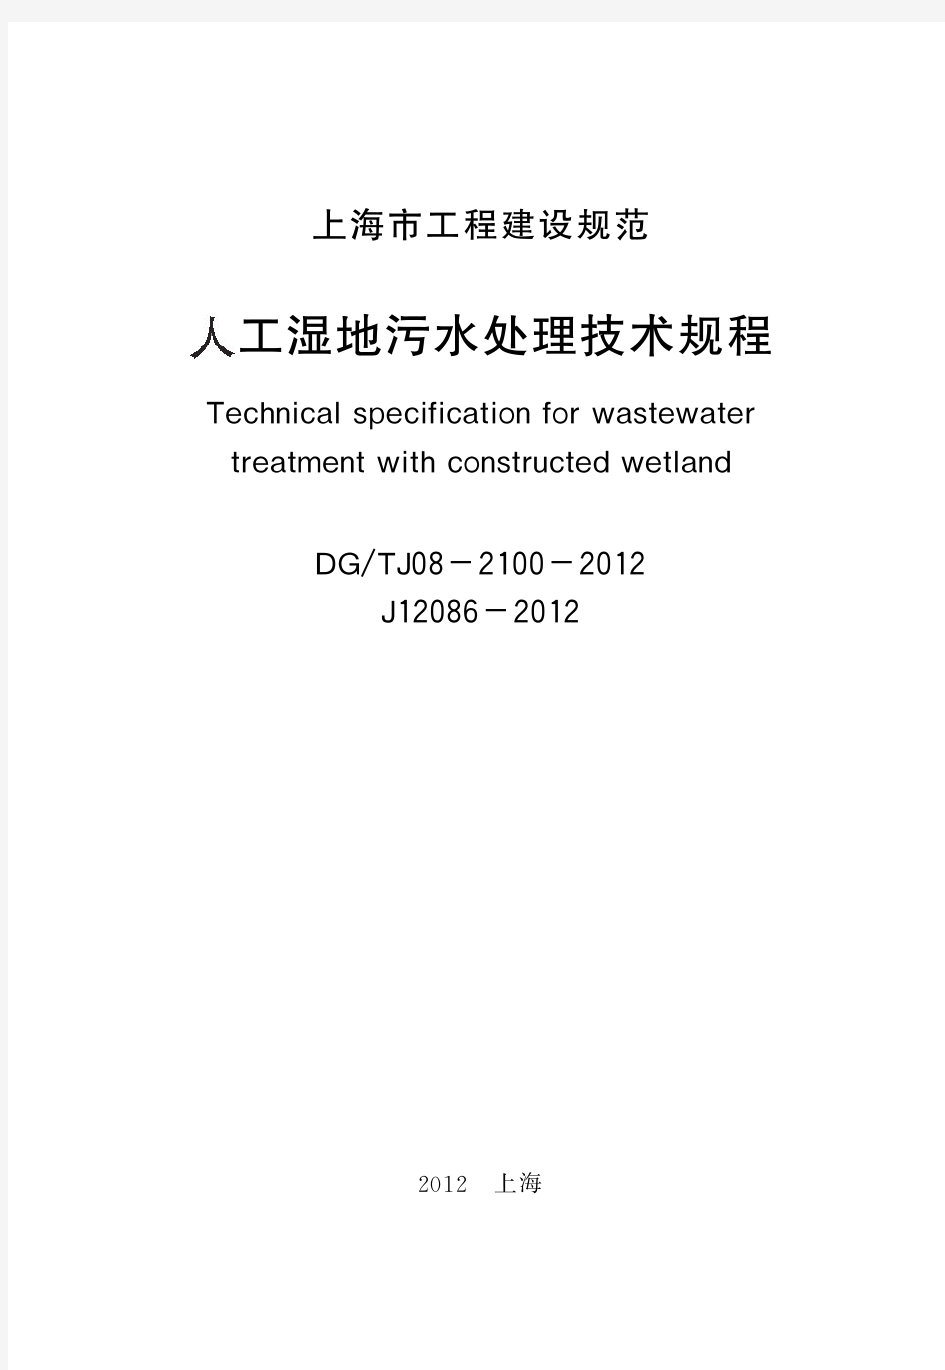 DGTJ08-2100-2012 人工湿地污水处理技术规范